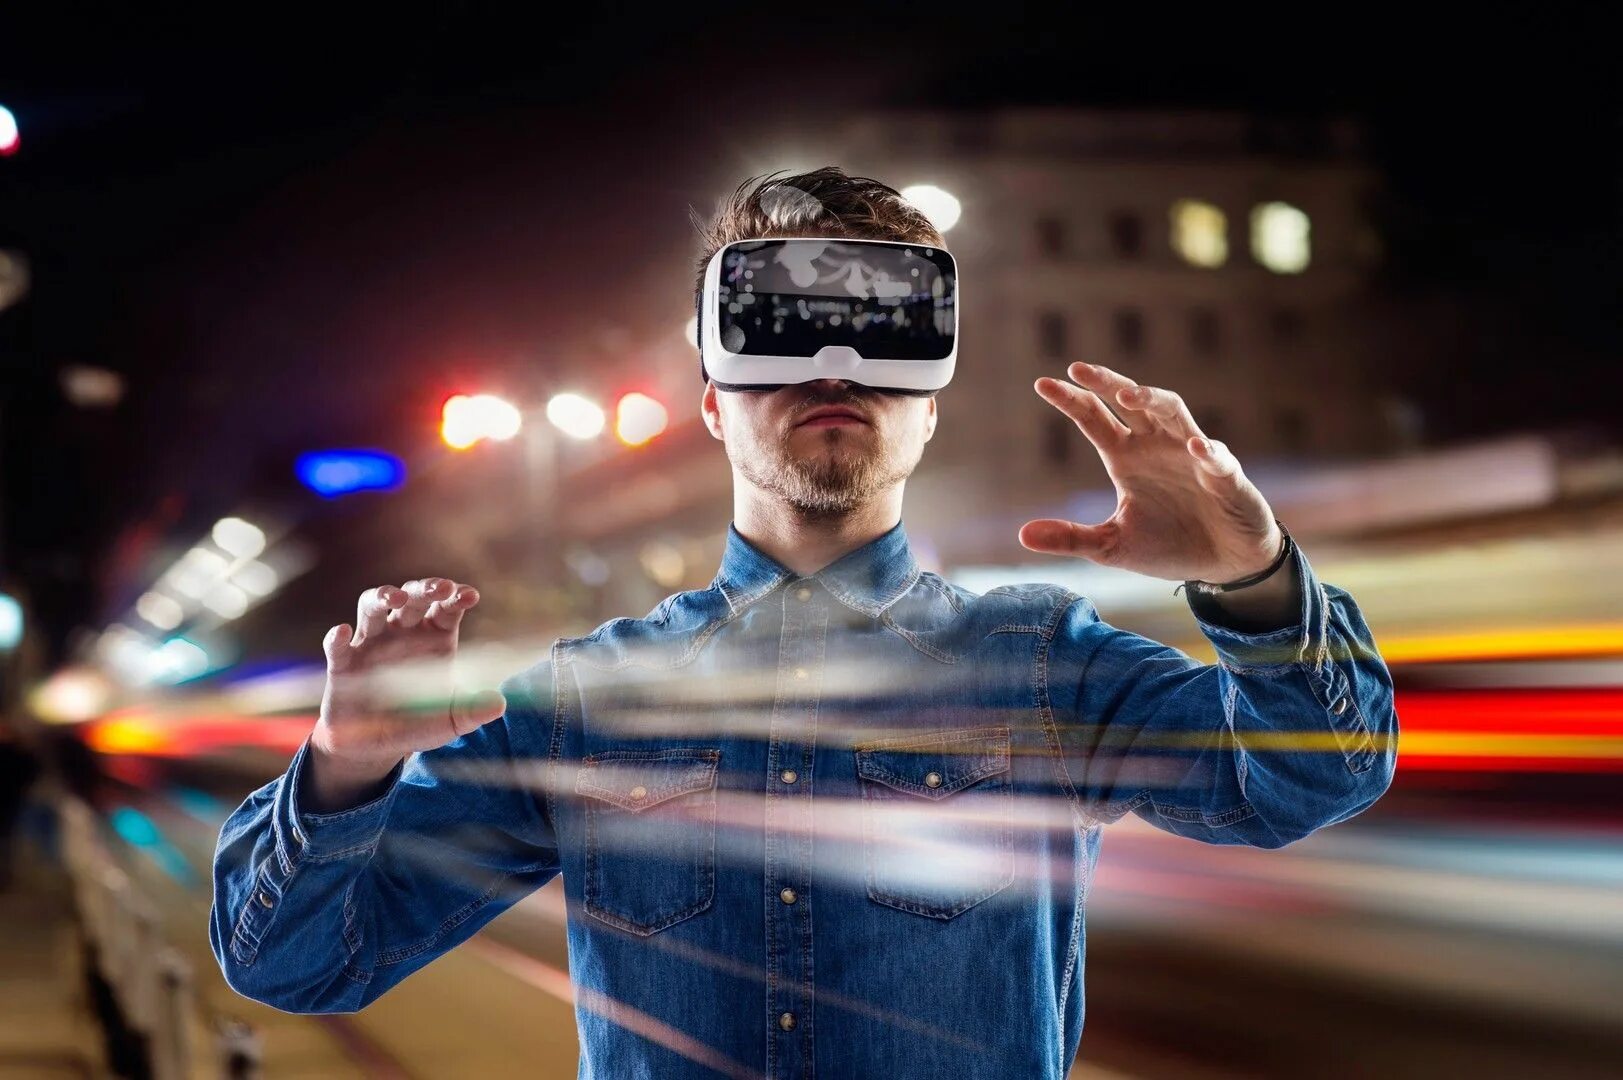 Vr реклама. VR виртуальная реальность. Вируальная реальность. Визуальная реальность. Человек в очках виртуальной реальности.